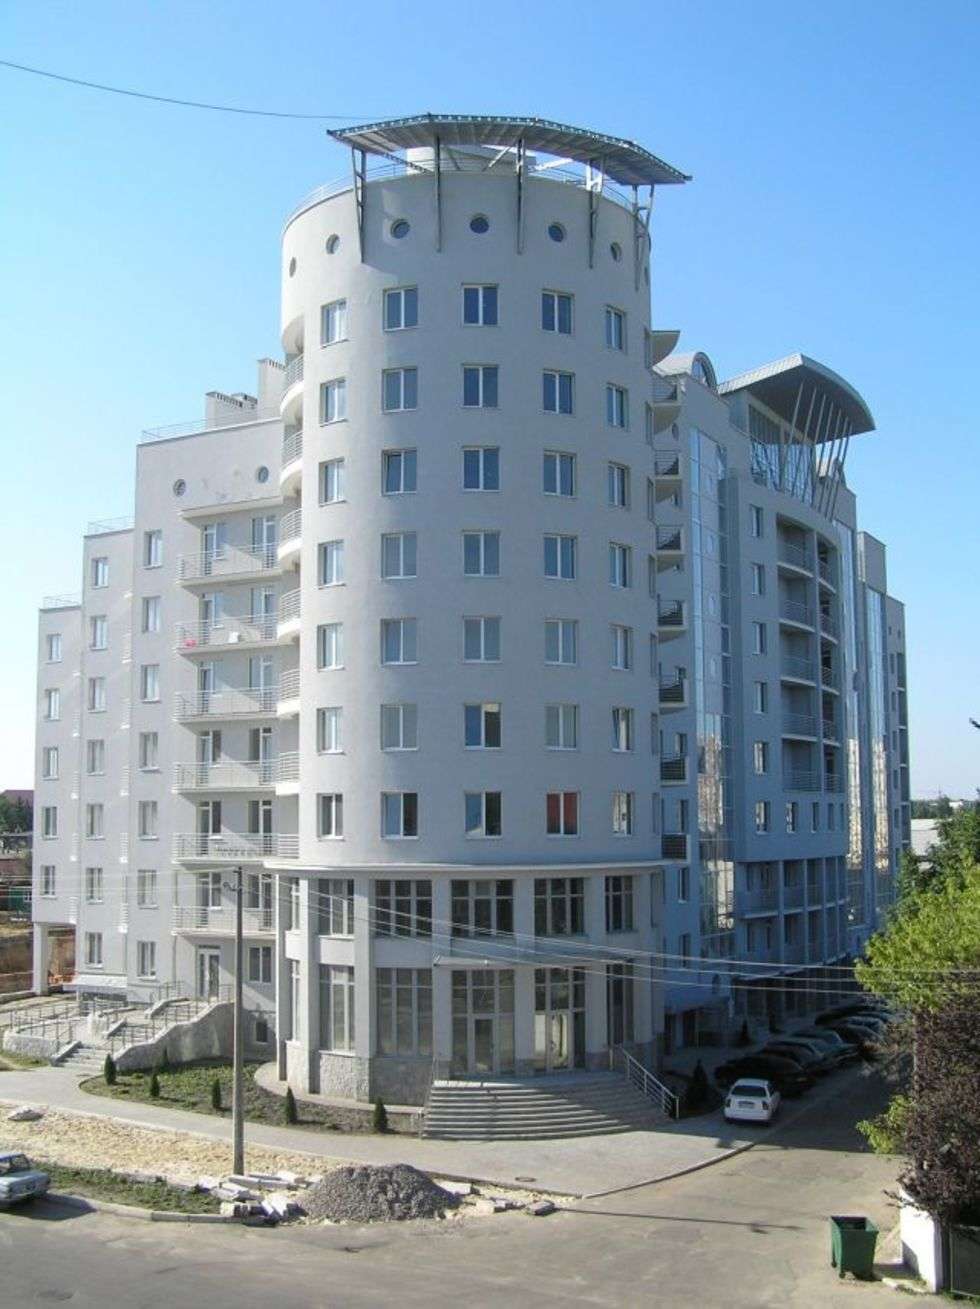  Budynek mieszkalny przy ul. Sacharowa we Lwowie &#8211; I miejsce w kategorii budynki mieszkalno-uslugowe 